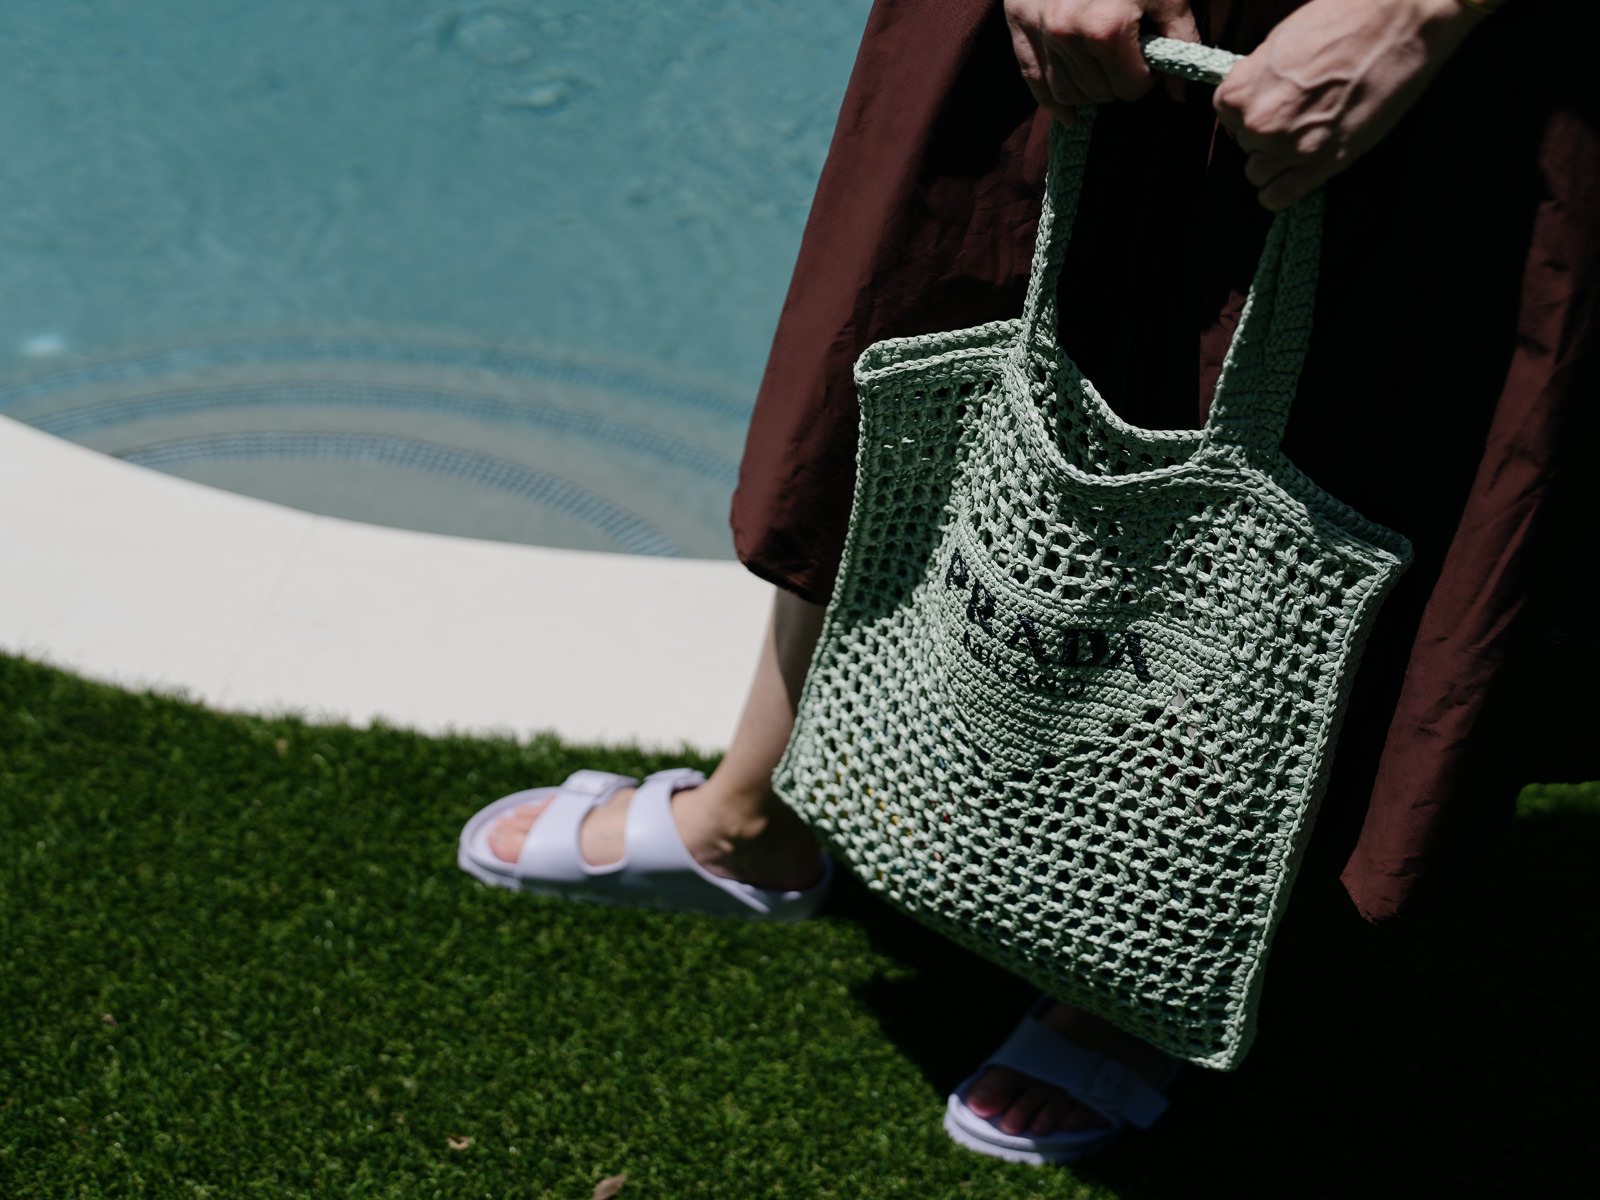 Get Summer Ready With Prada's Latest Raffia Bags - PurseBlog